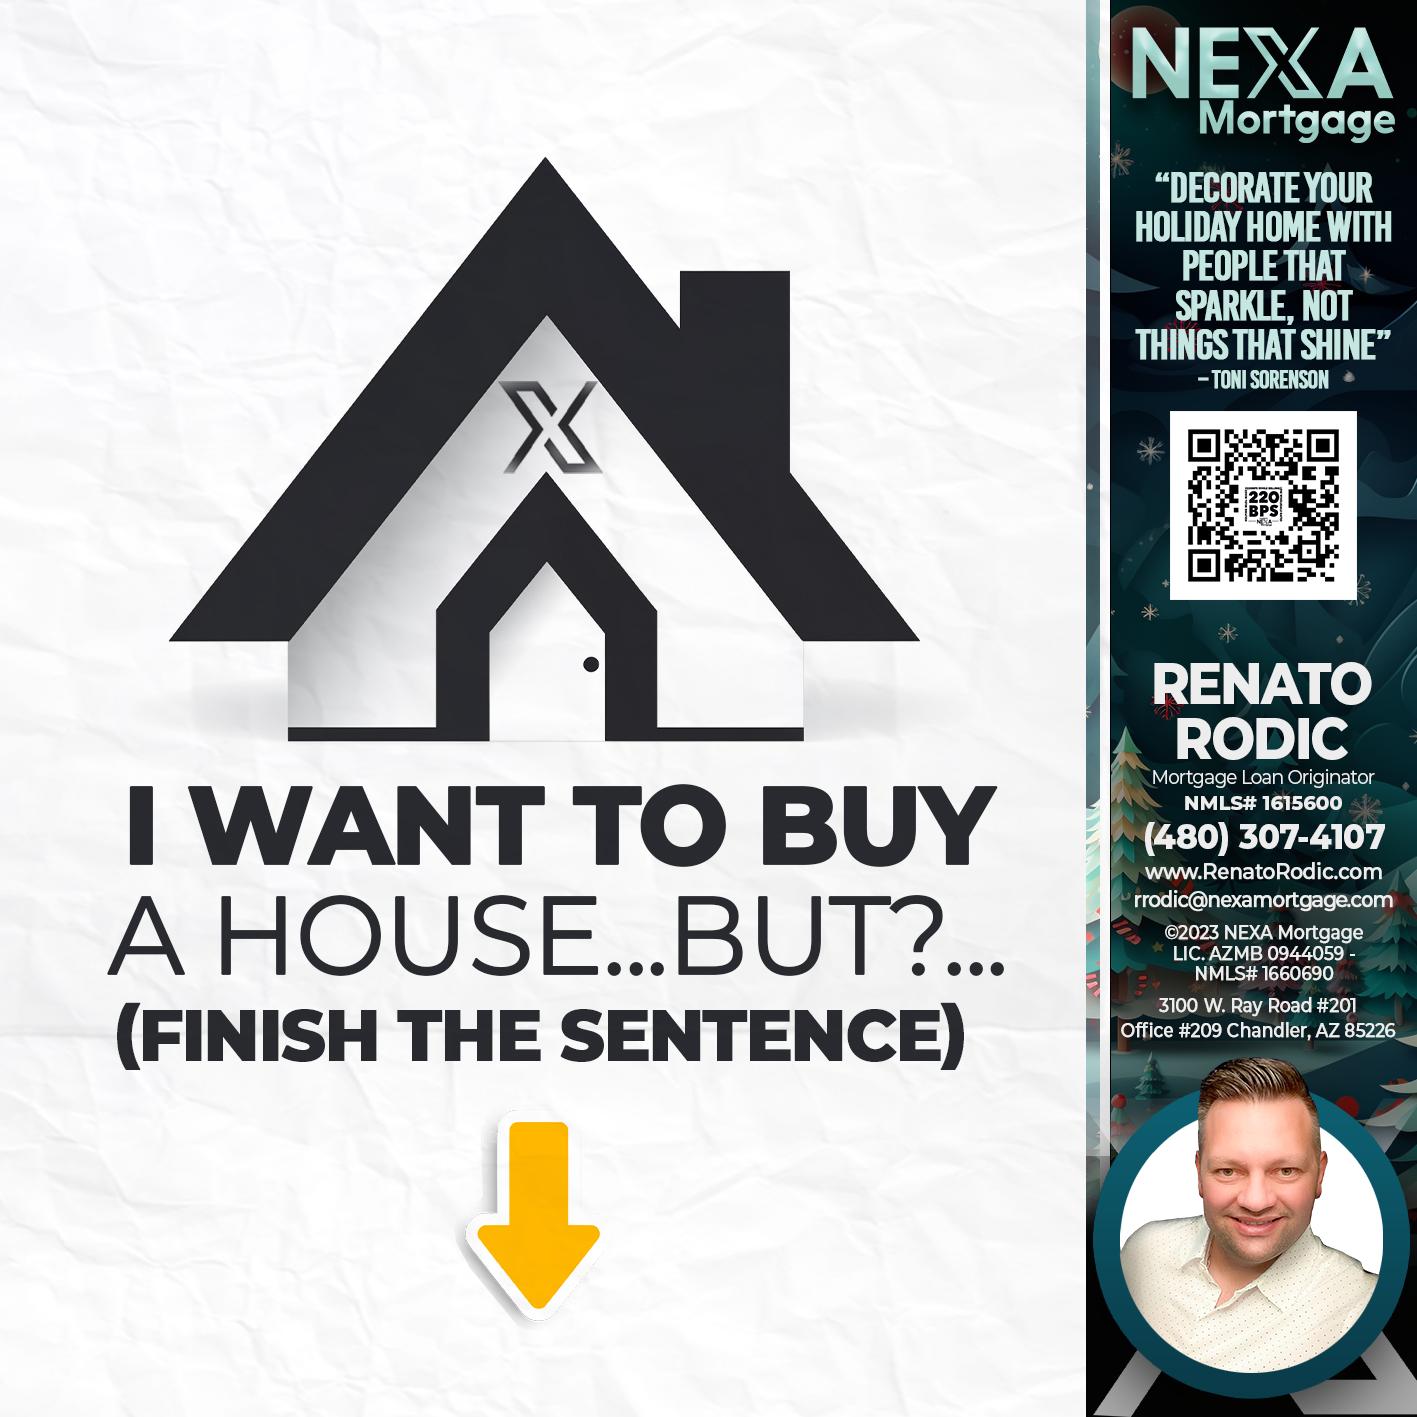 buy a house? - Renato Rodic -Mortgage Loan Originator